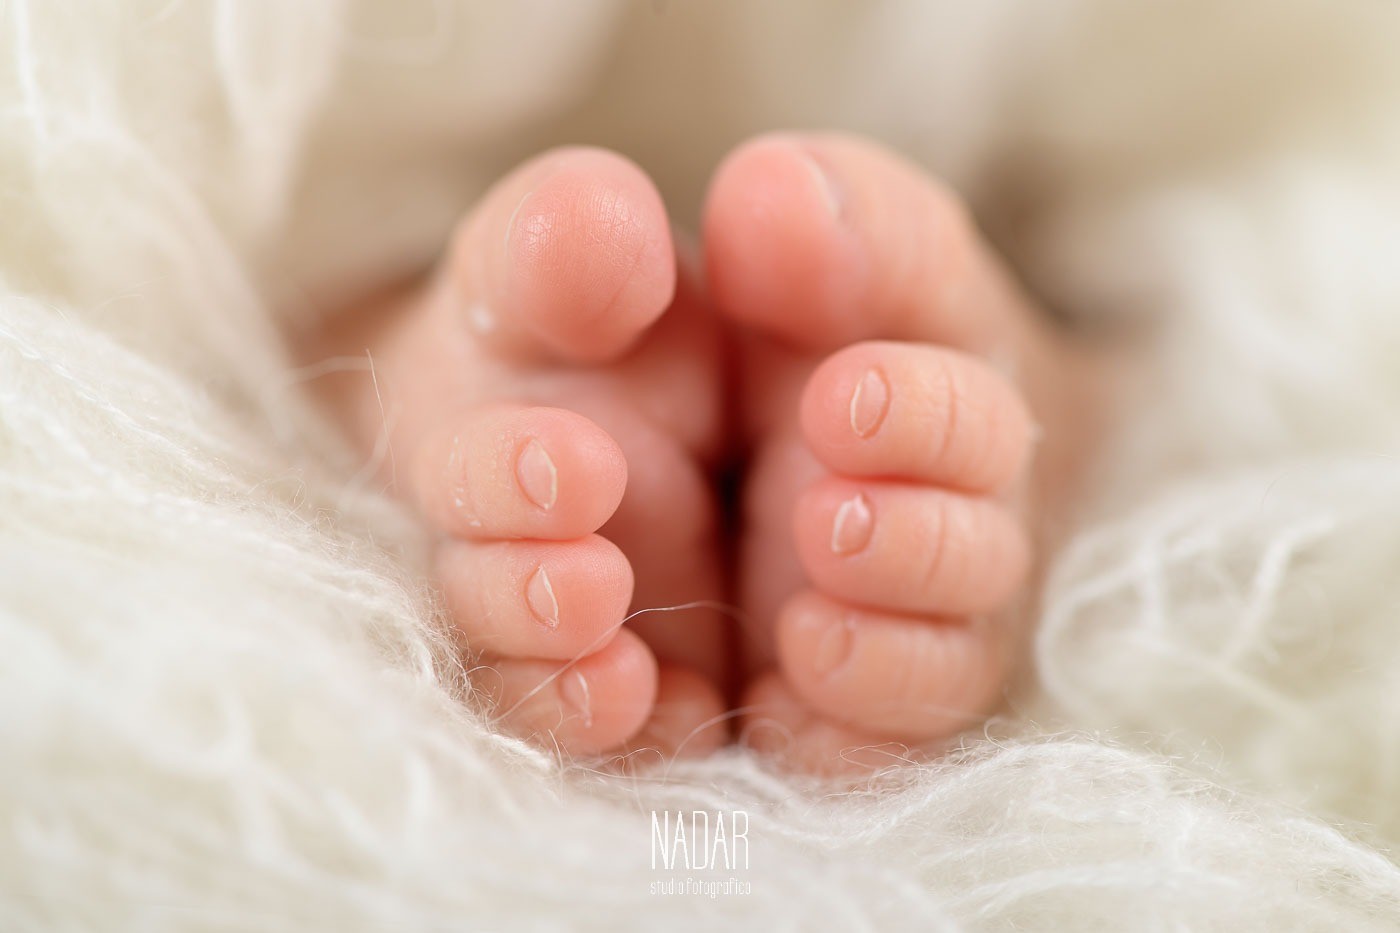 dettaglio dei piedini di un neonato durante un servizio fotografico in studio